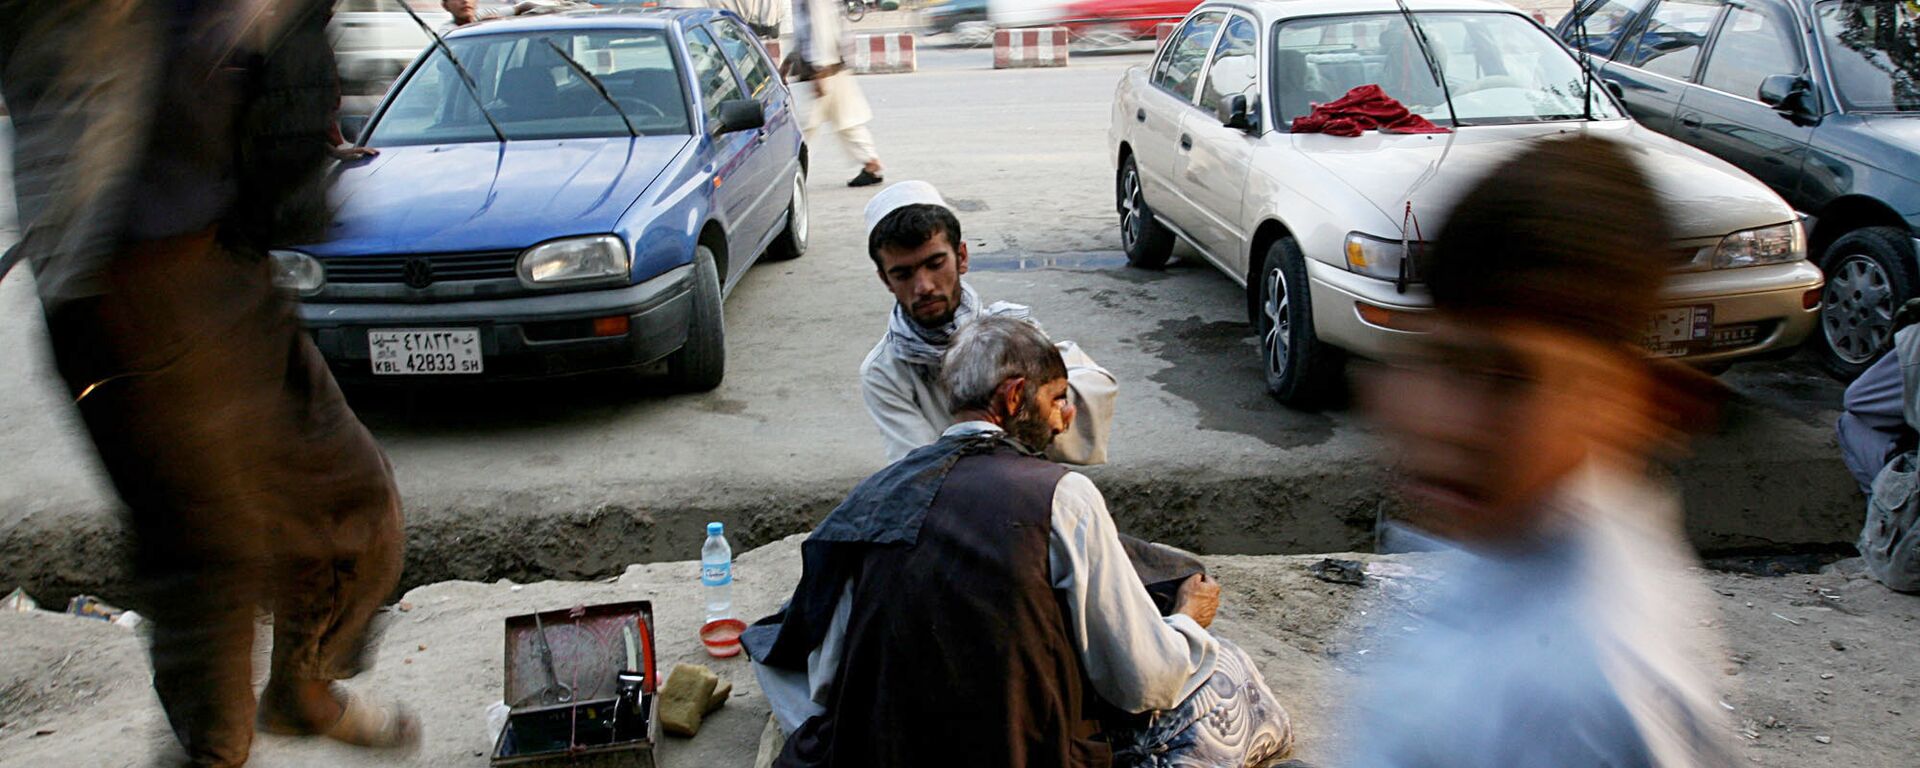 Афганский уличный парикмахер в Кабуле, 2007 год - Sputnik Армения, 1920, 08.11.2021